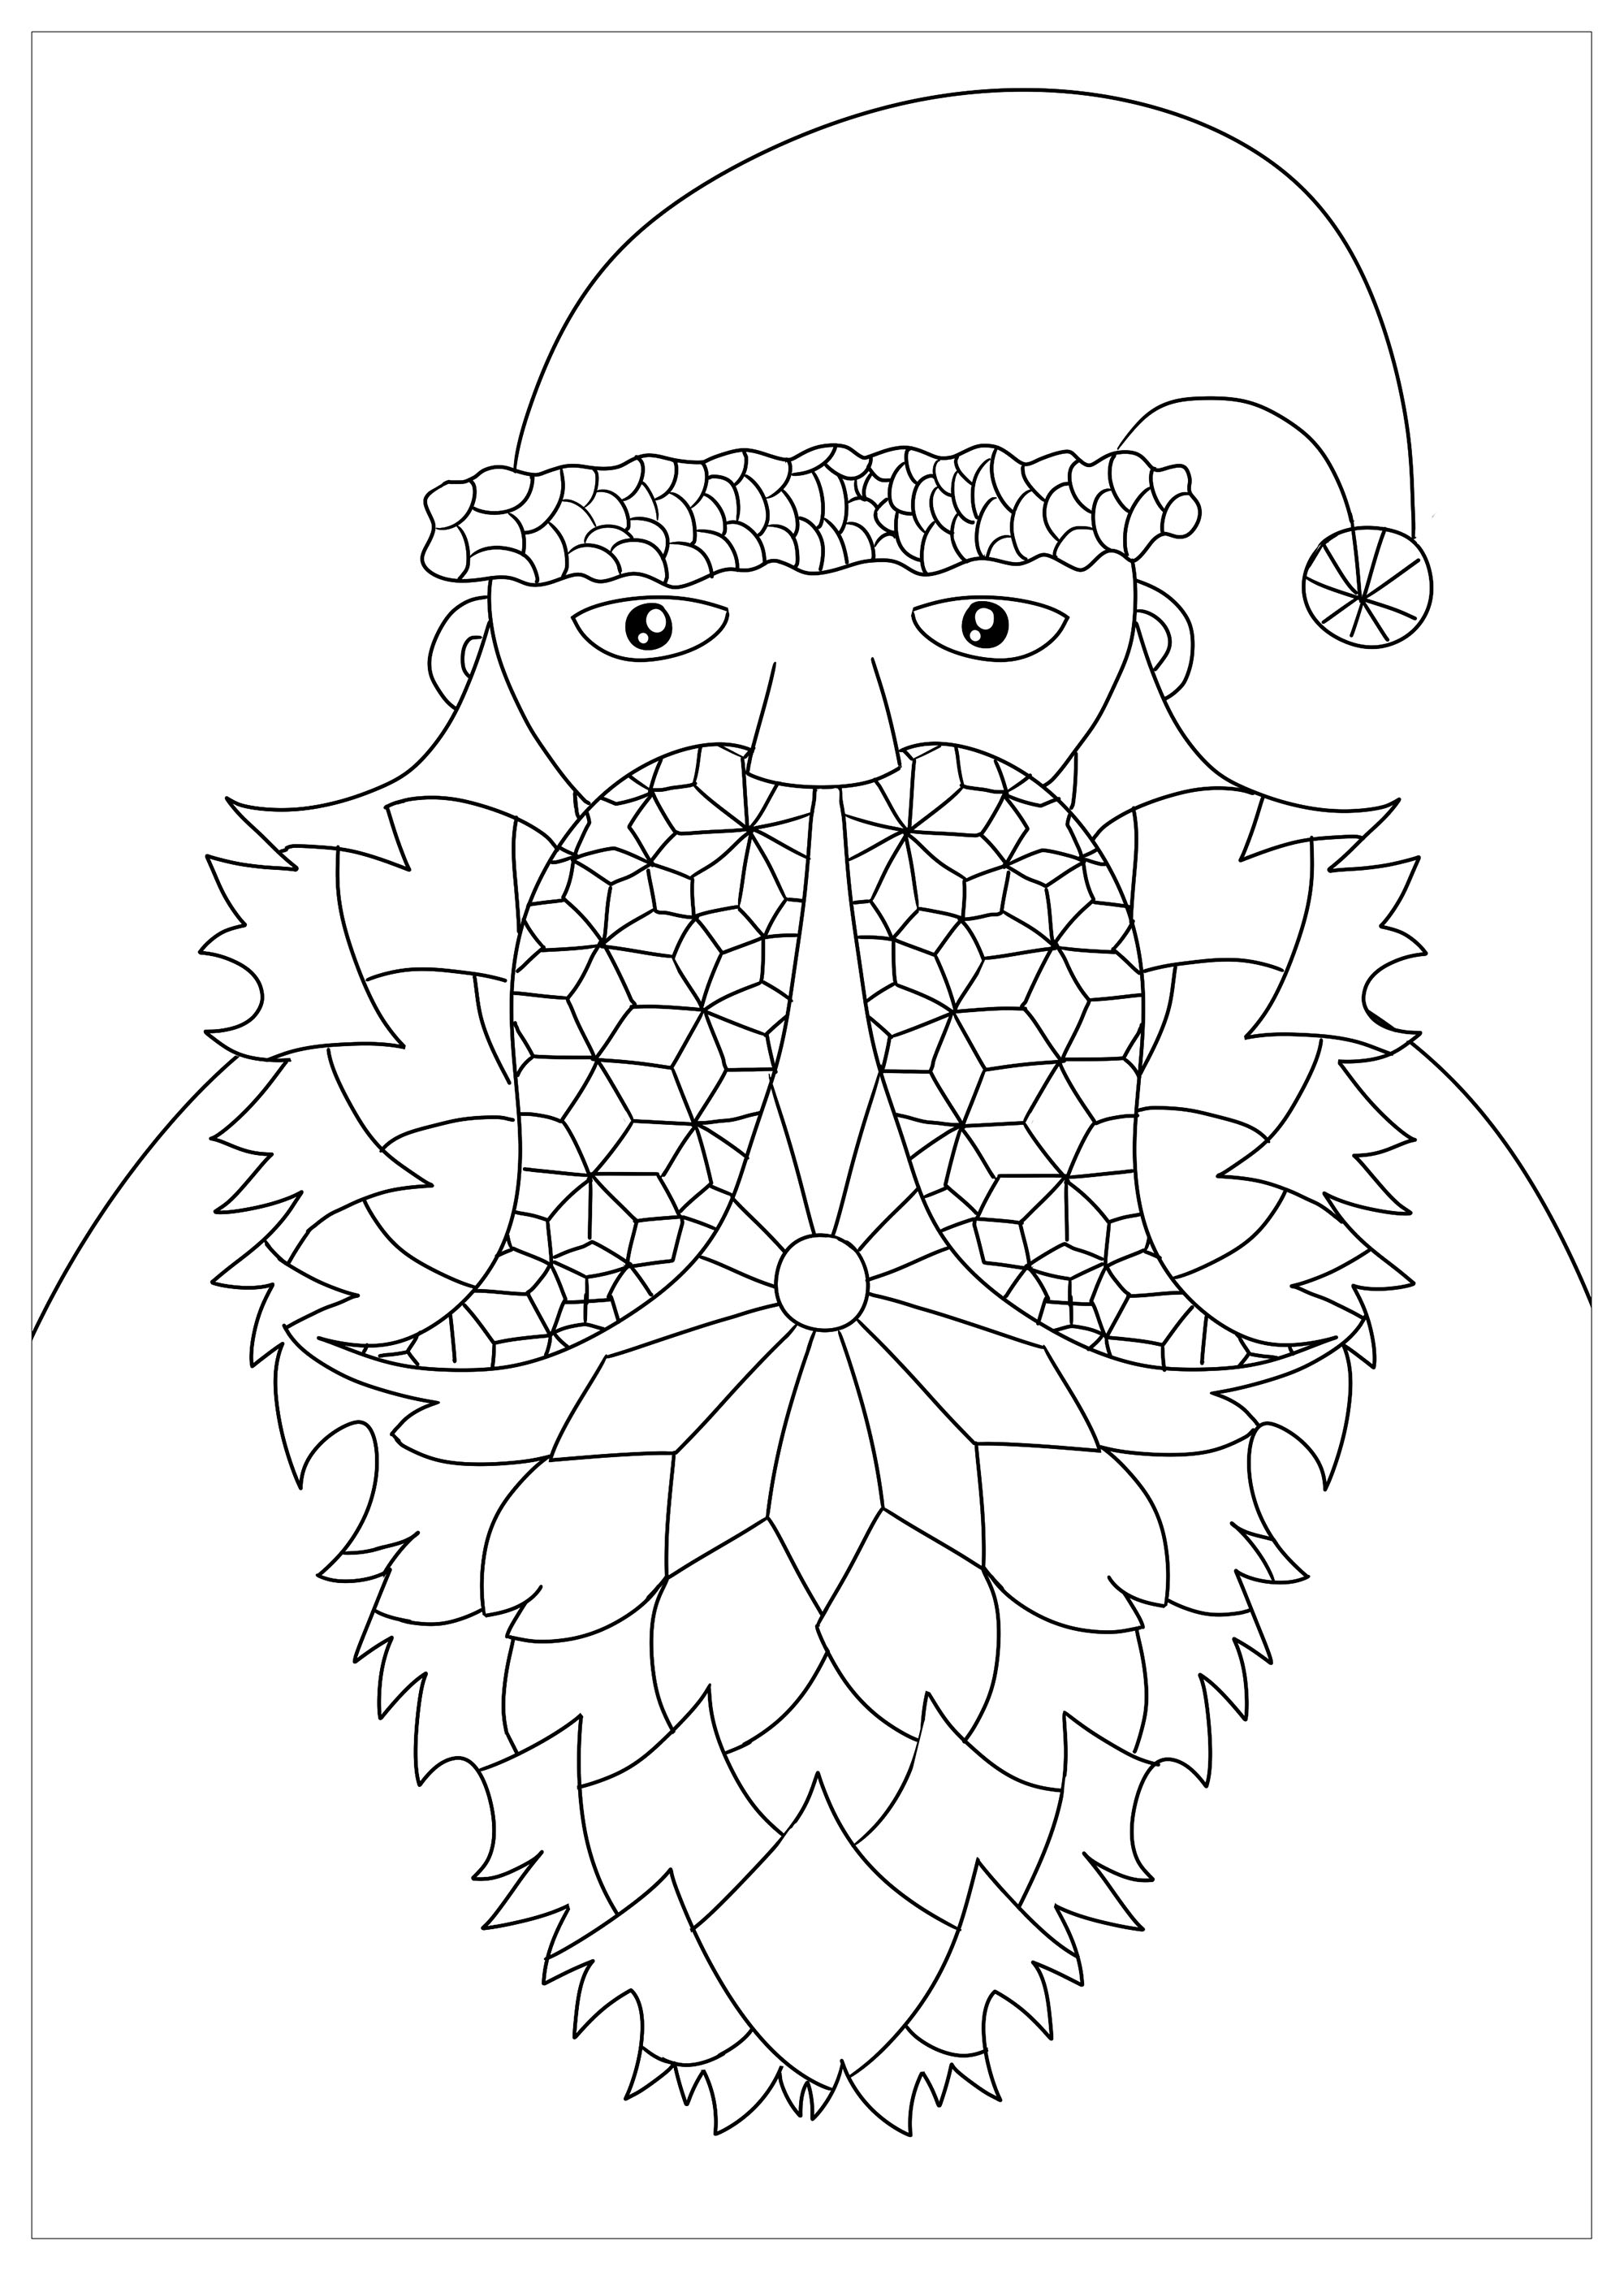 Papai Noel com barba composta por elementos geométricos